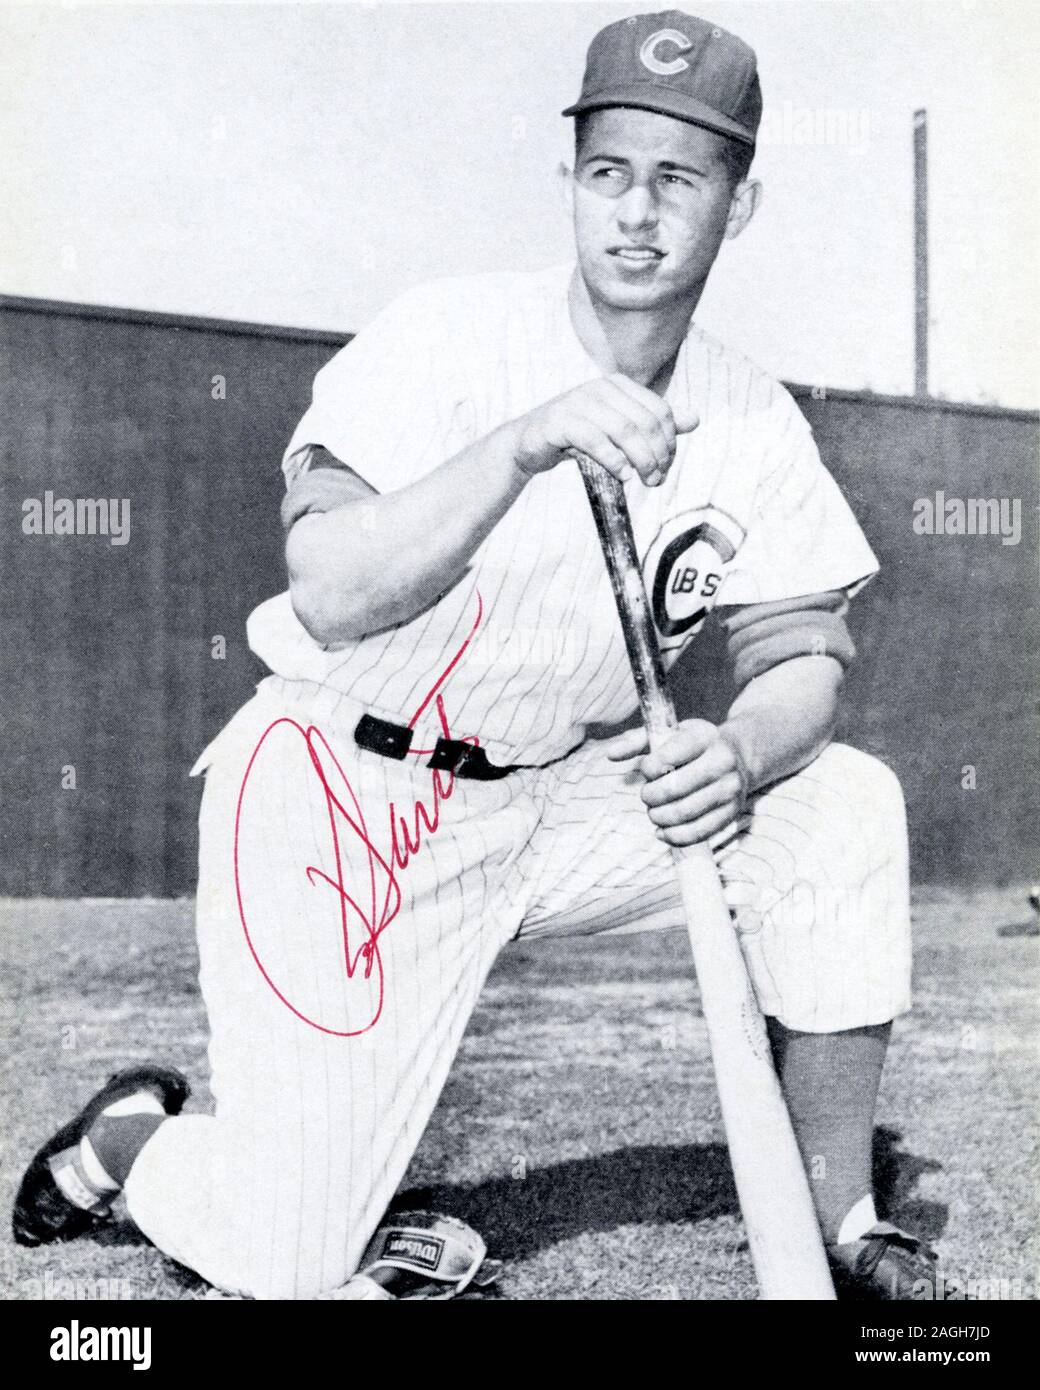 Vintage autographed black and white souvenir photo of Major League